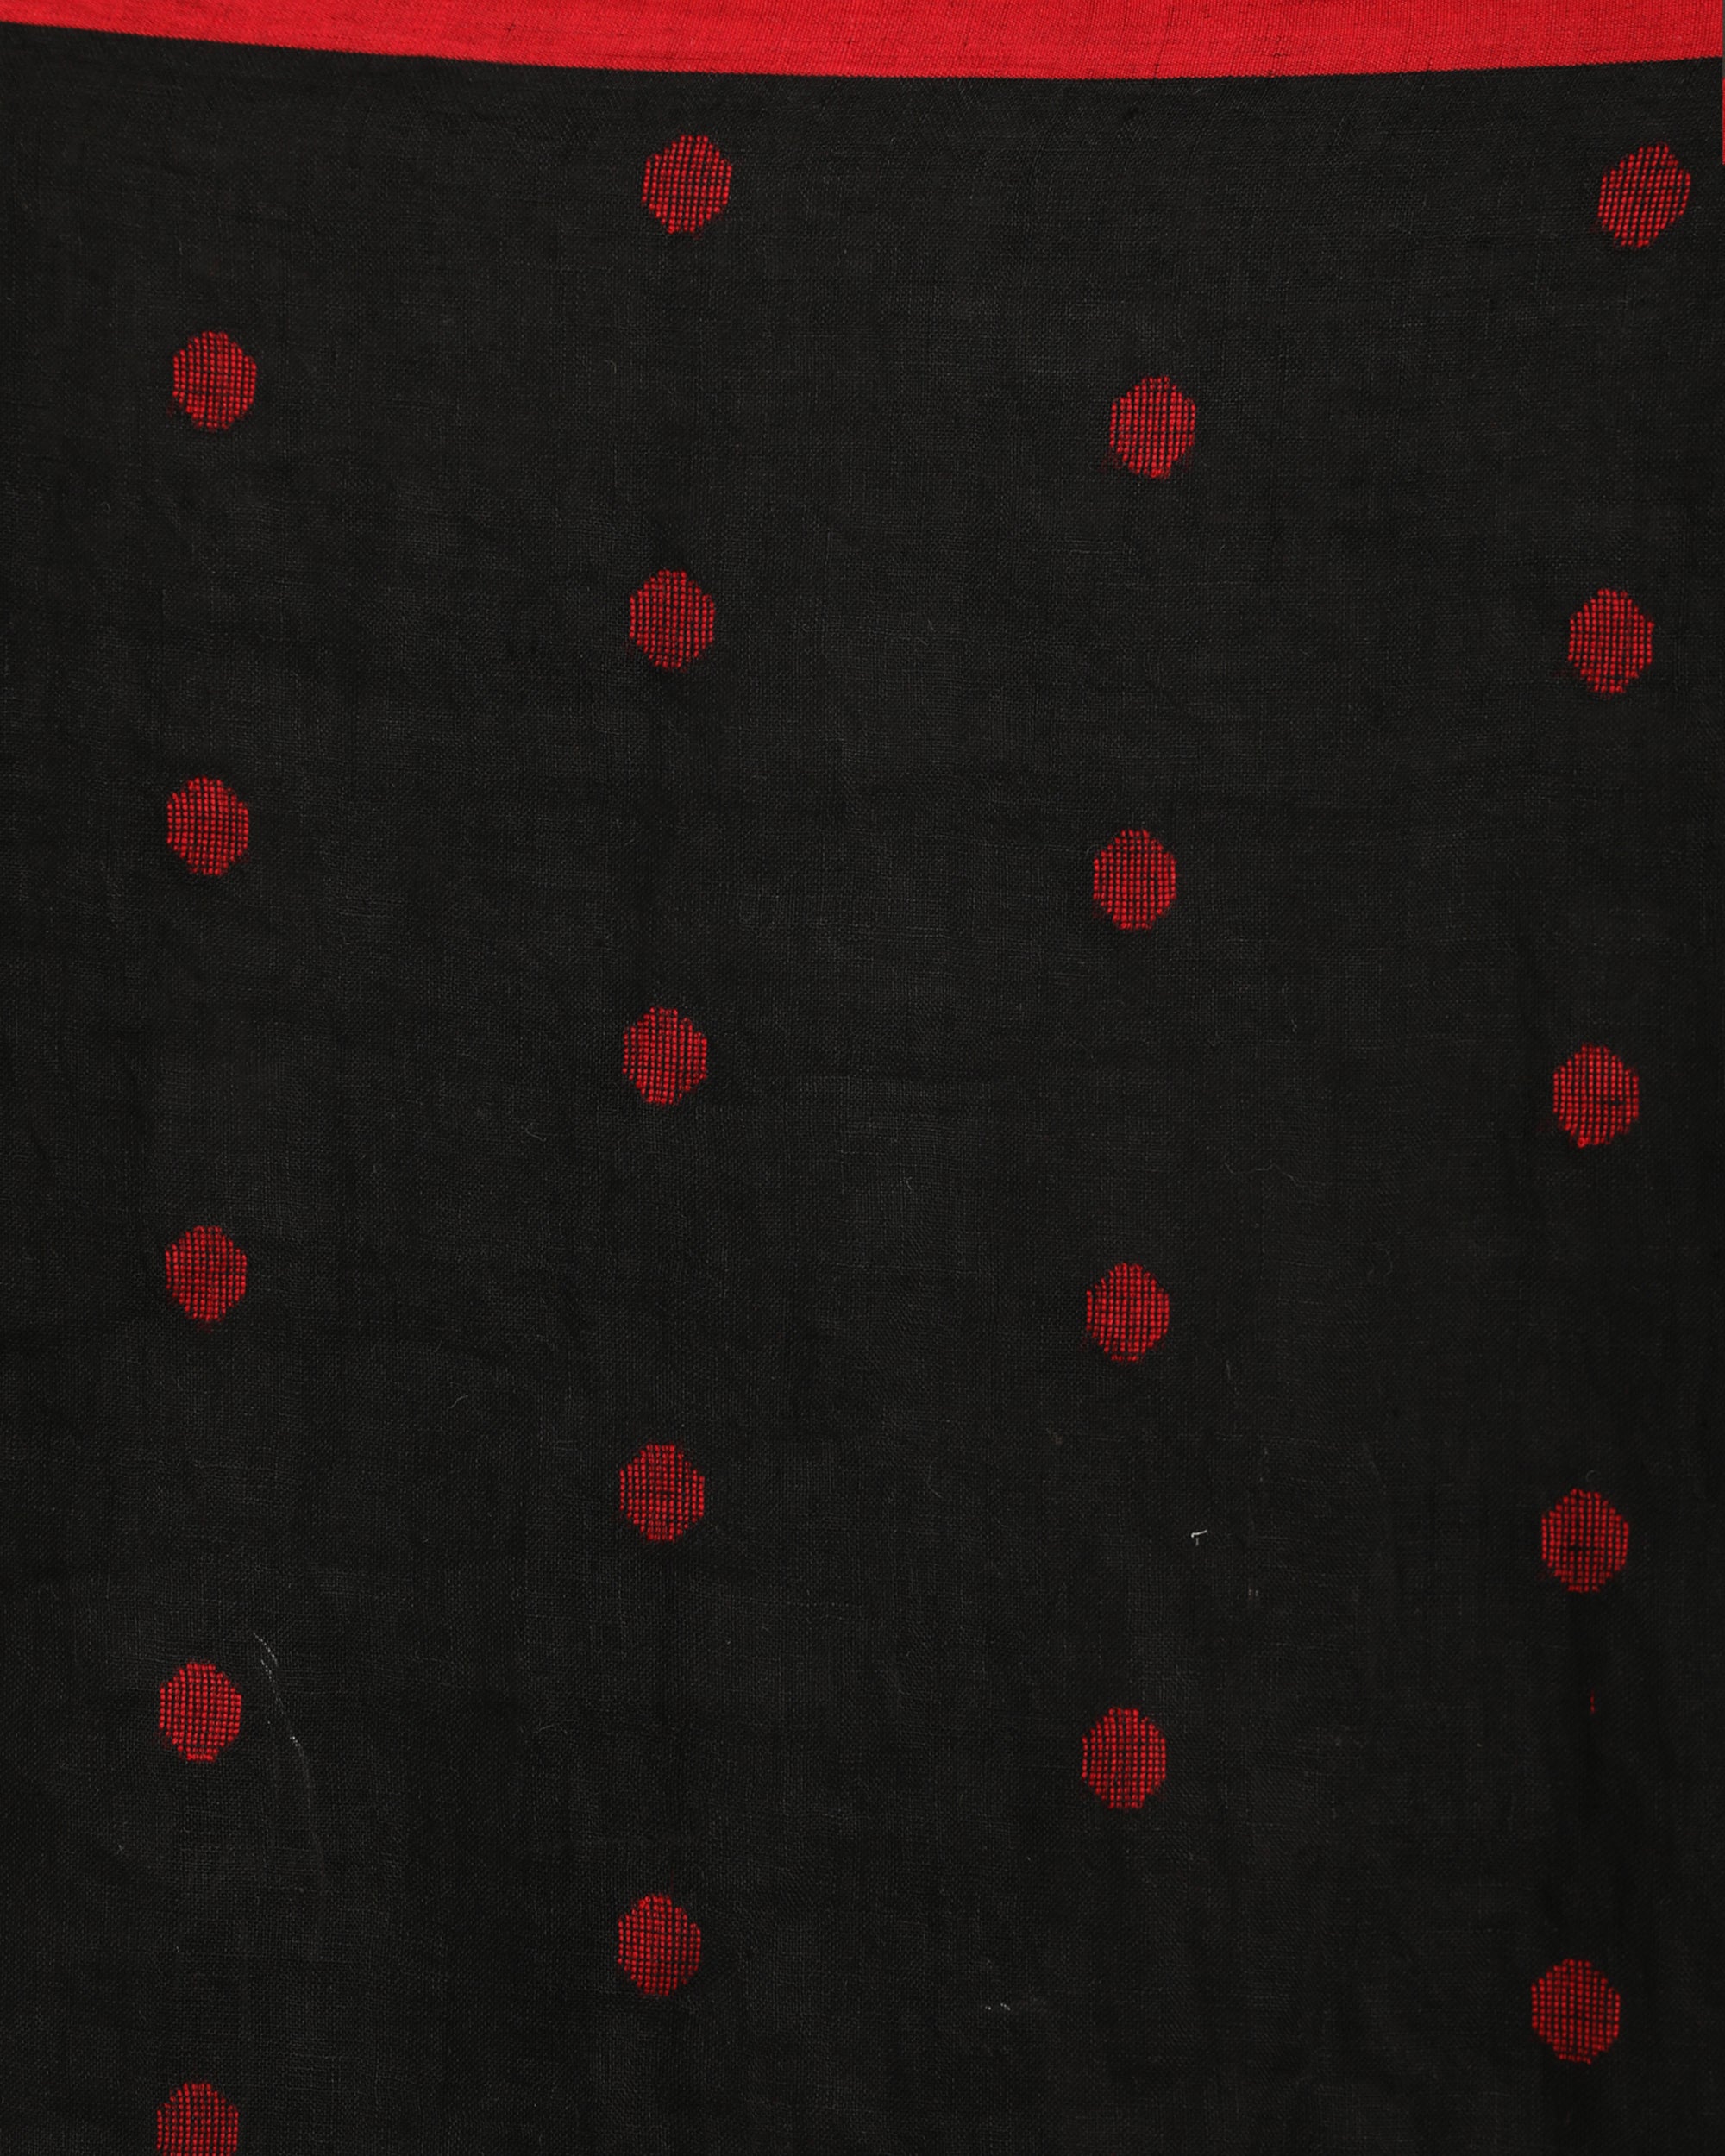 Women's Black Traditional Handloom Linen Jamdani Saree - Angoshobha